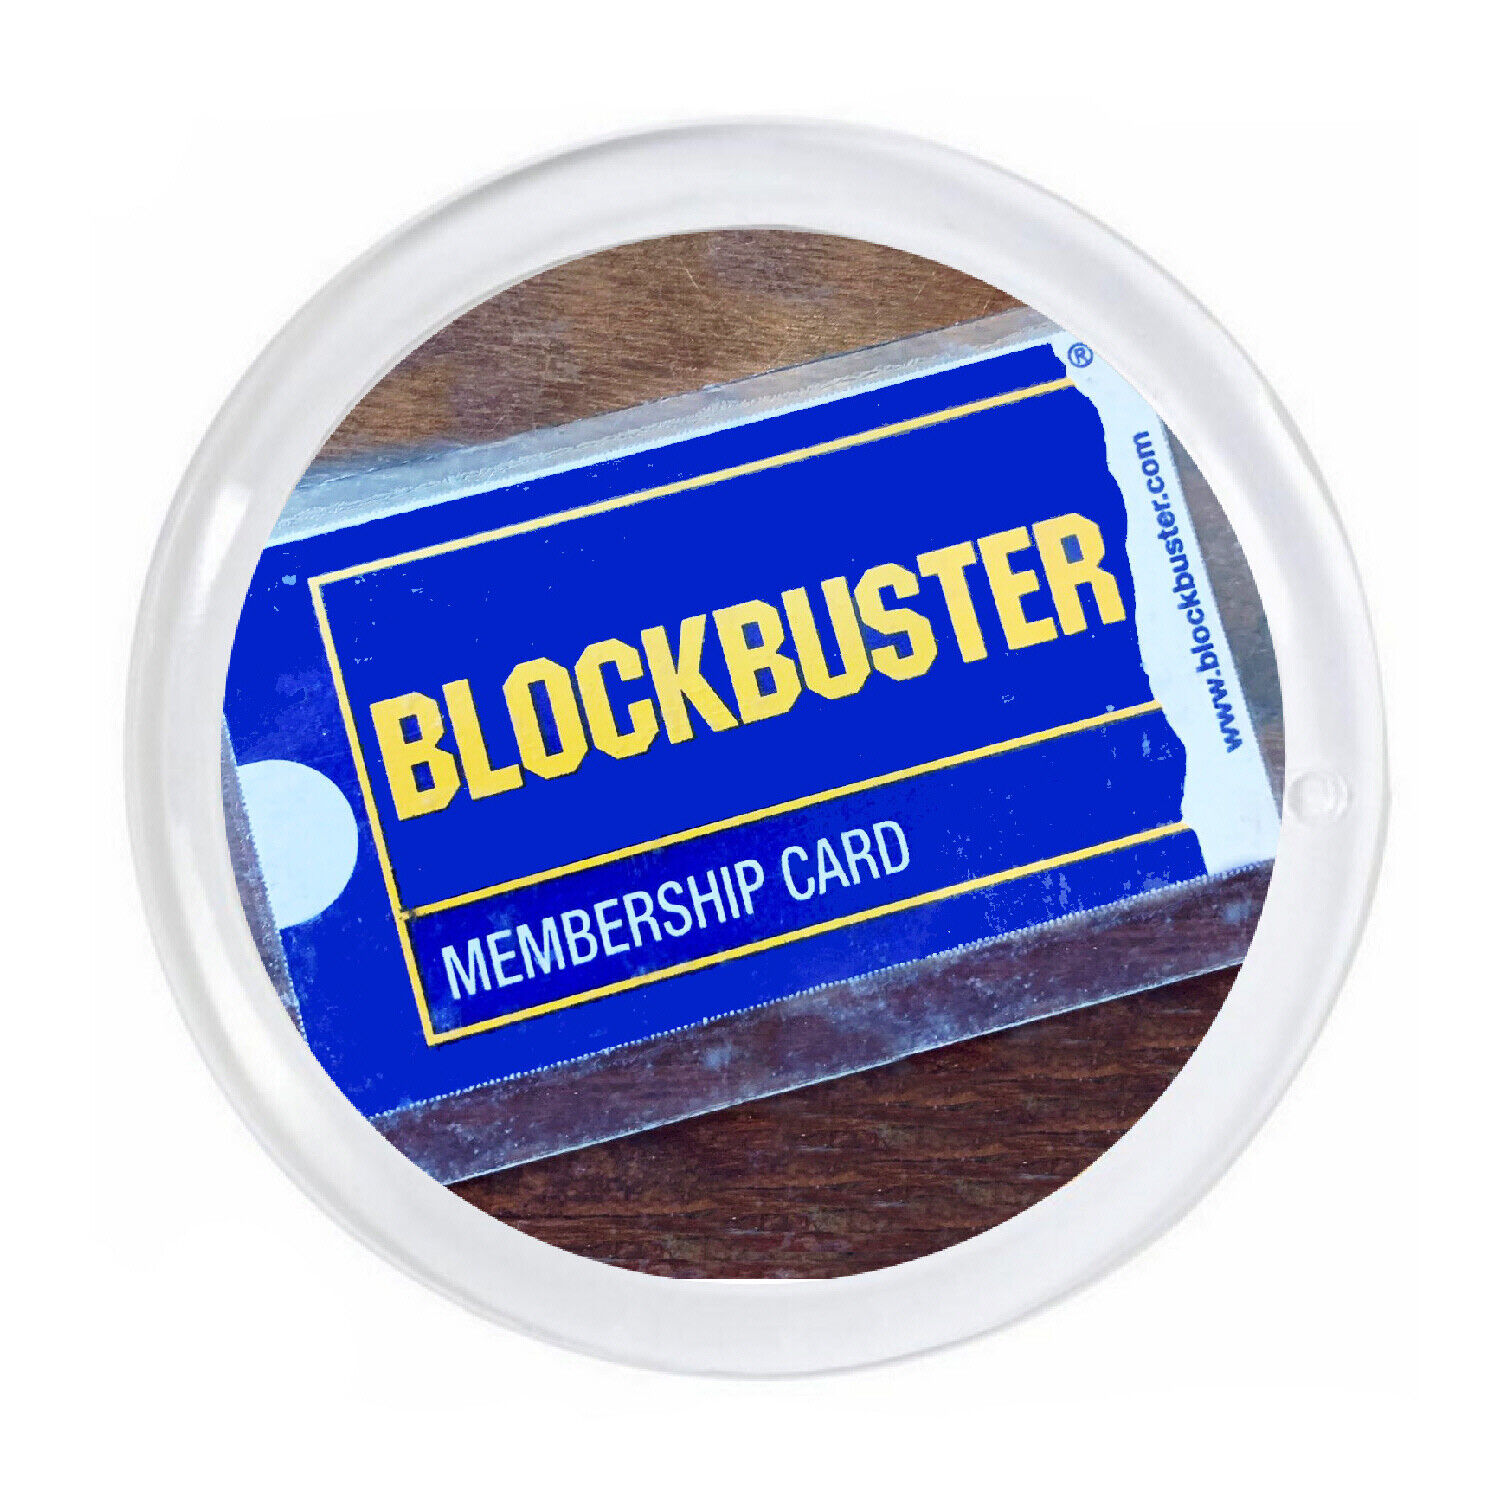 Blockbuster Video Membership Card Magnet big round 3 inch diameter